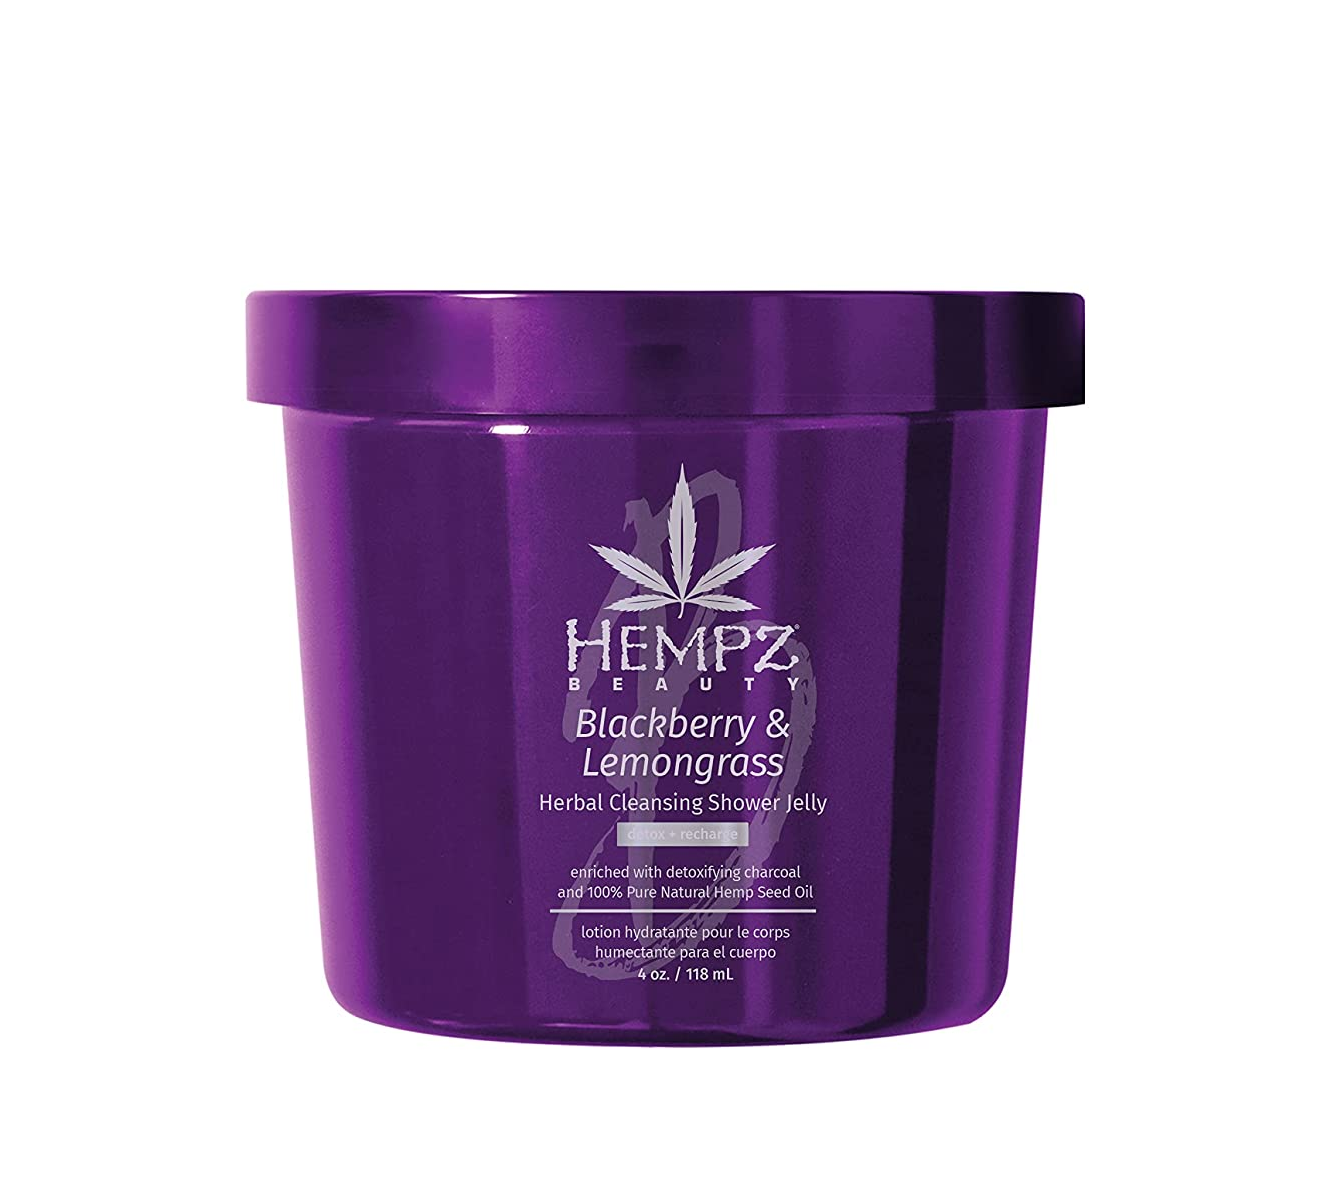 Hempz Blackberry & Lemongrass Herbal Cleansing Shower Jelly, 4 Oz. - $16.30